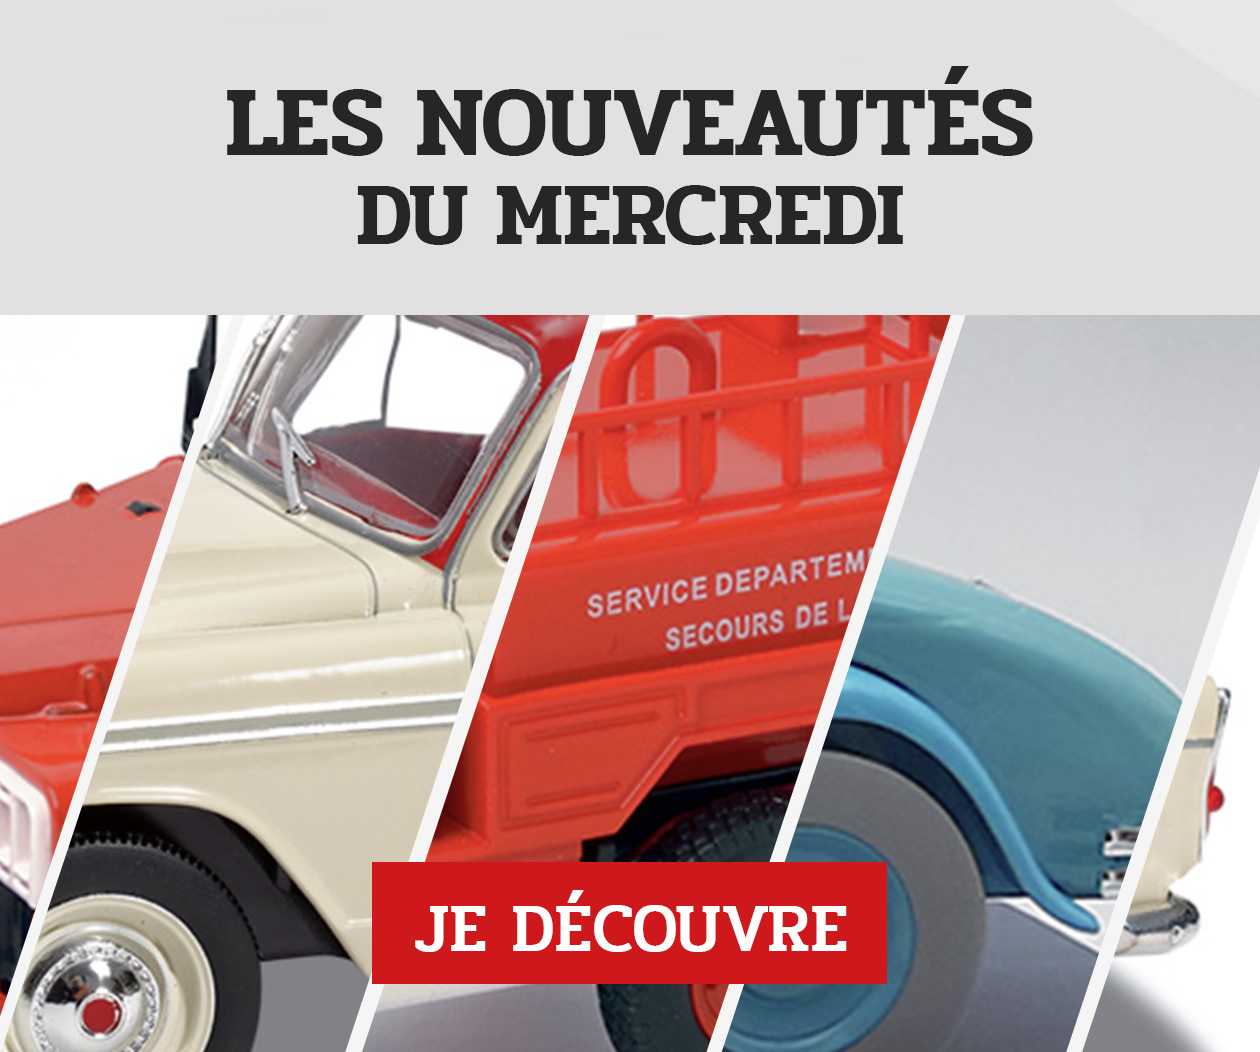 Autobus et autocar miniature - Les Introuvables Hachette Collections